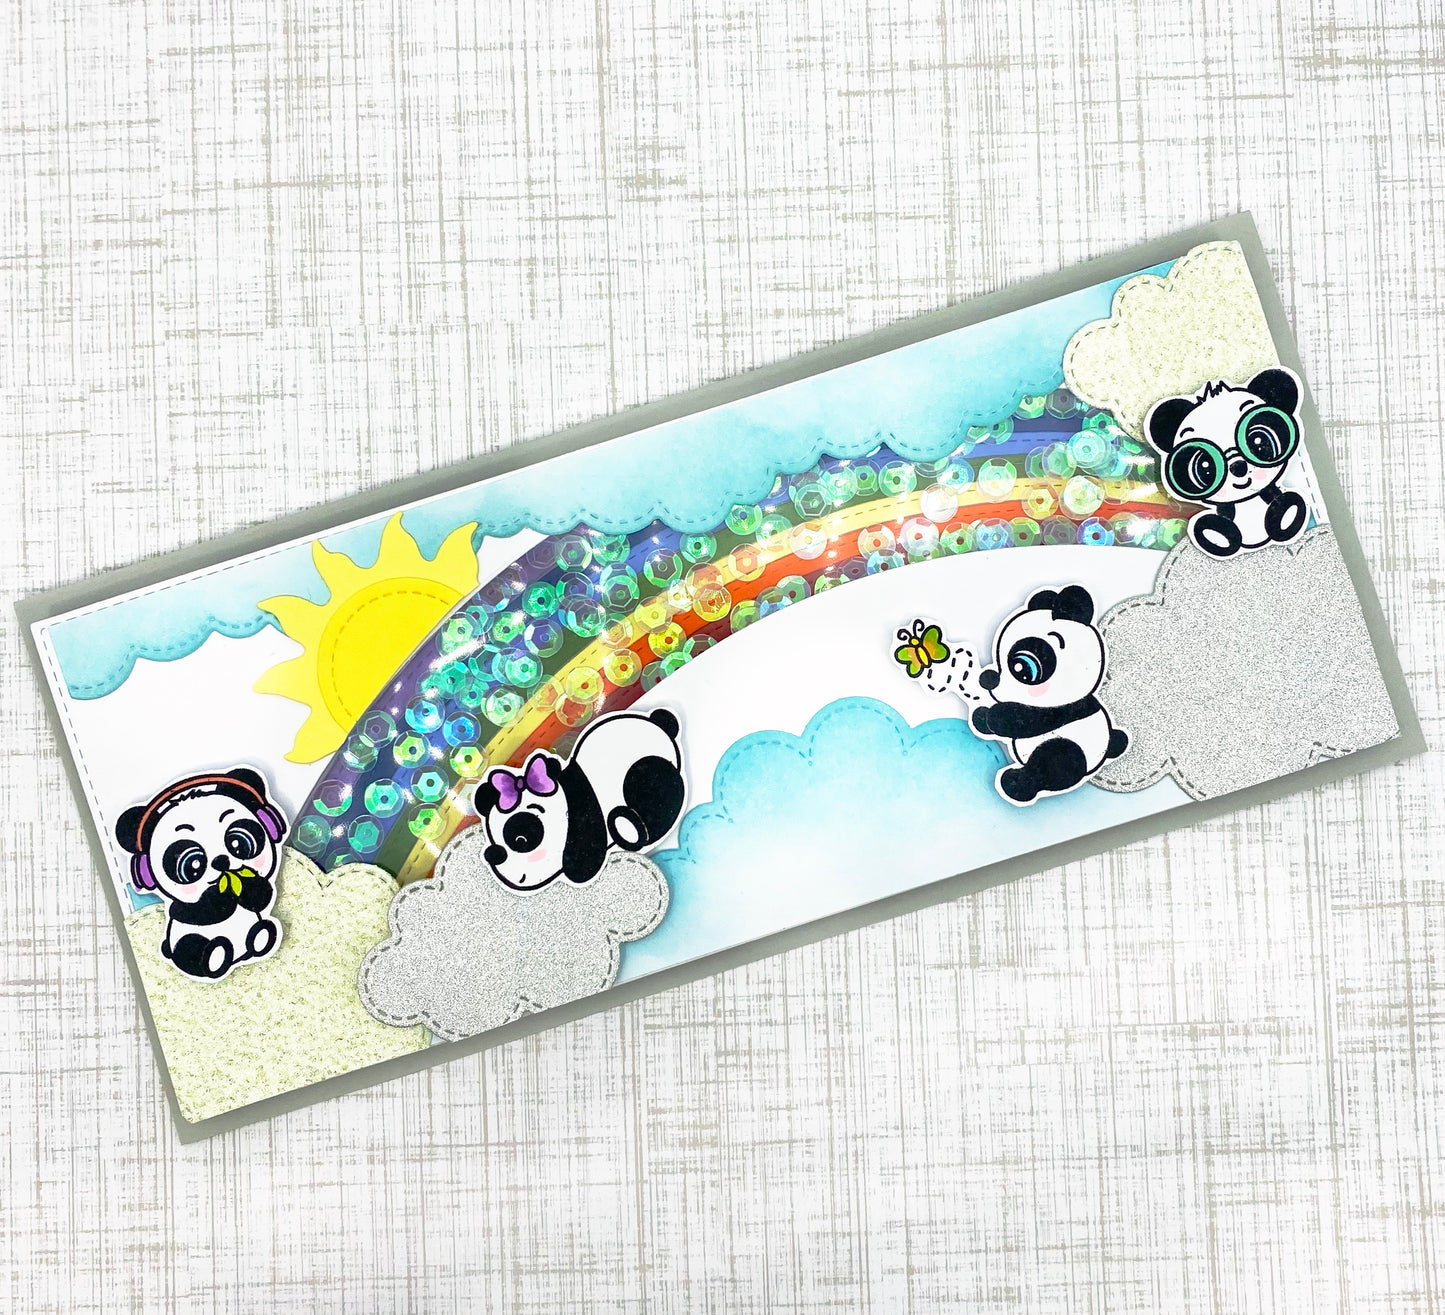 Panda-stic Stamp set